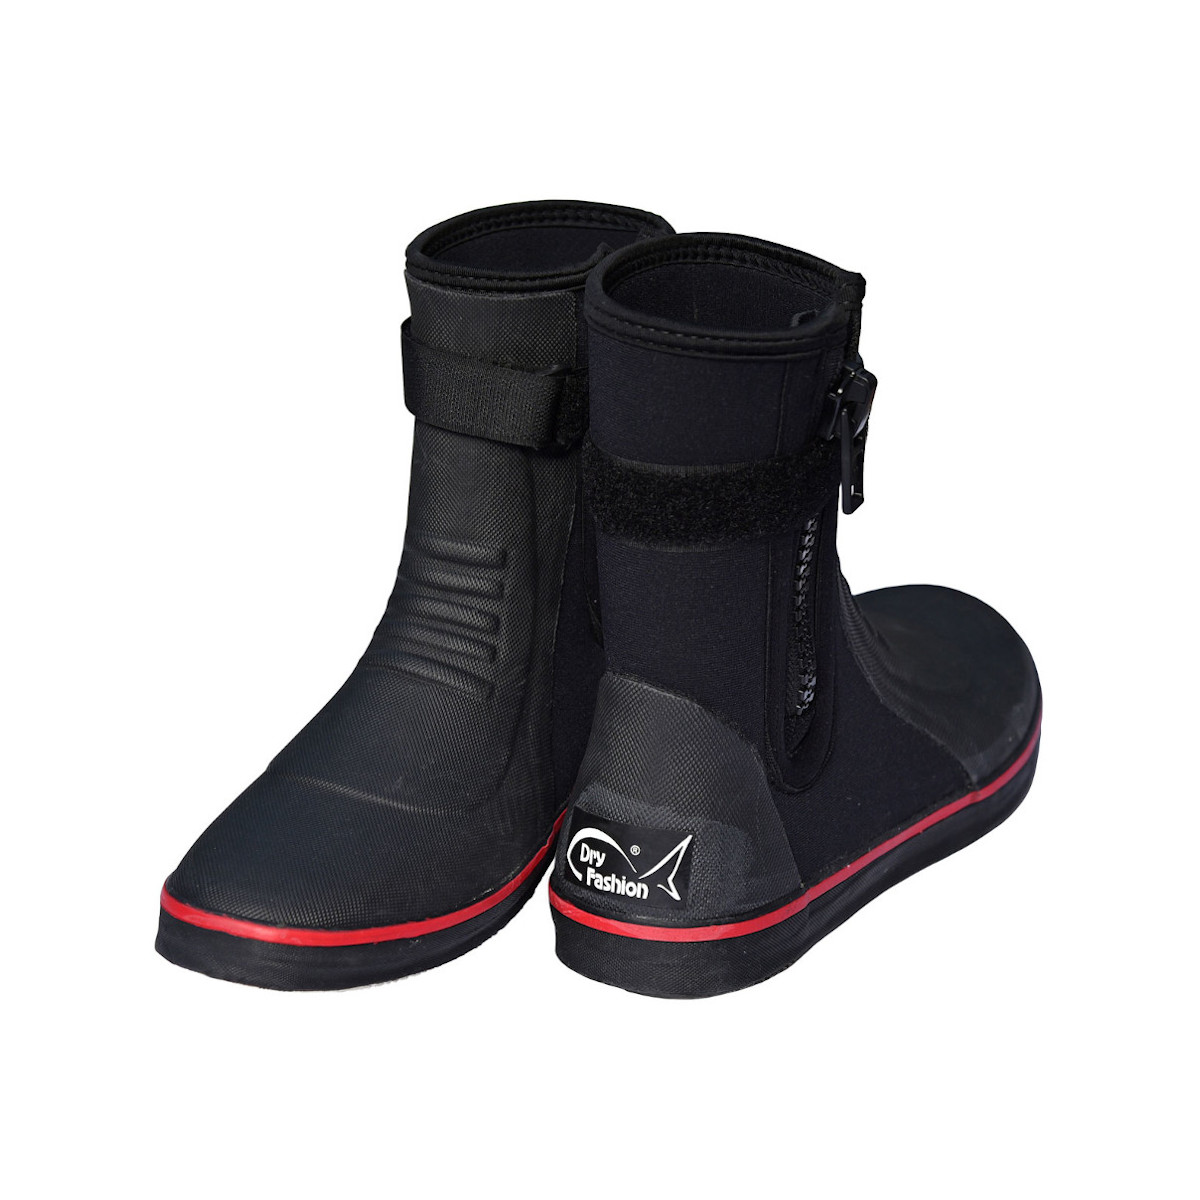 Dry Fashion Pro bottes néoprène unisexes noir-rouge, taille 40/41